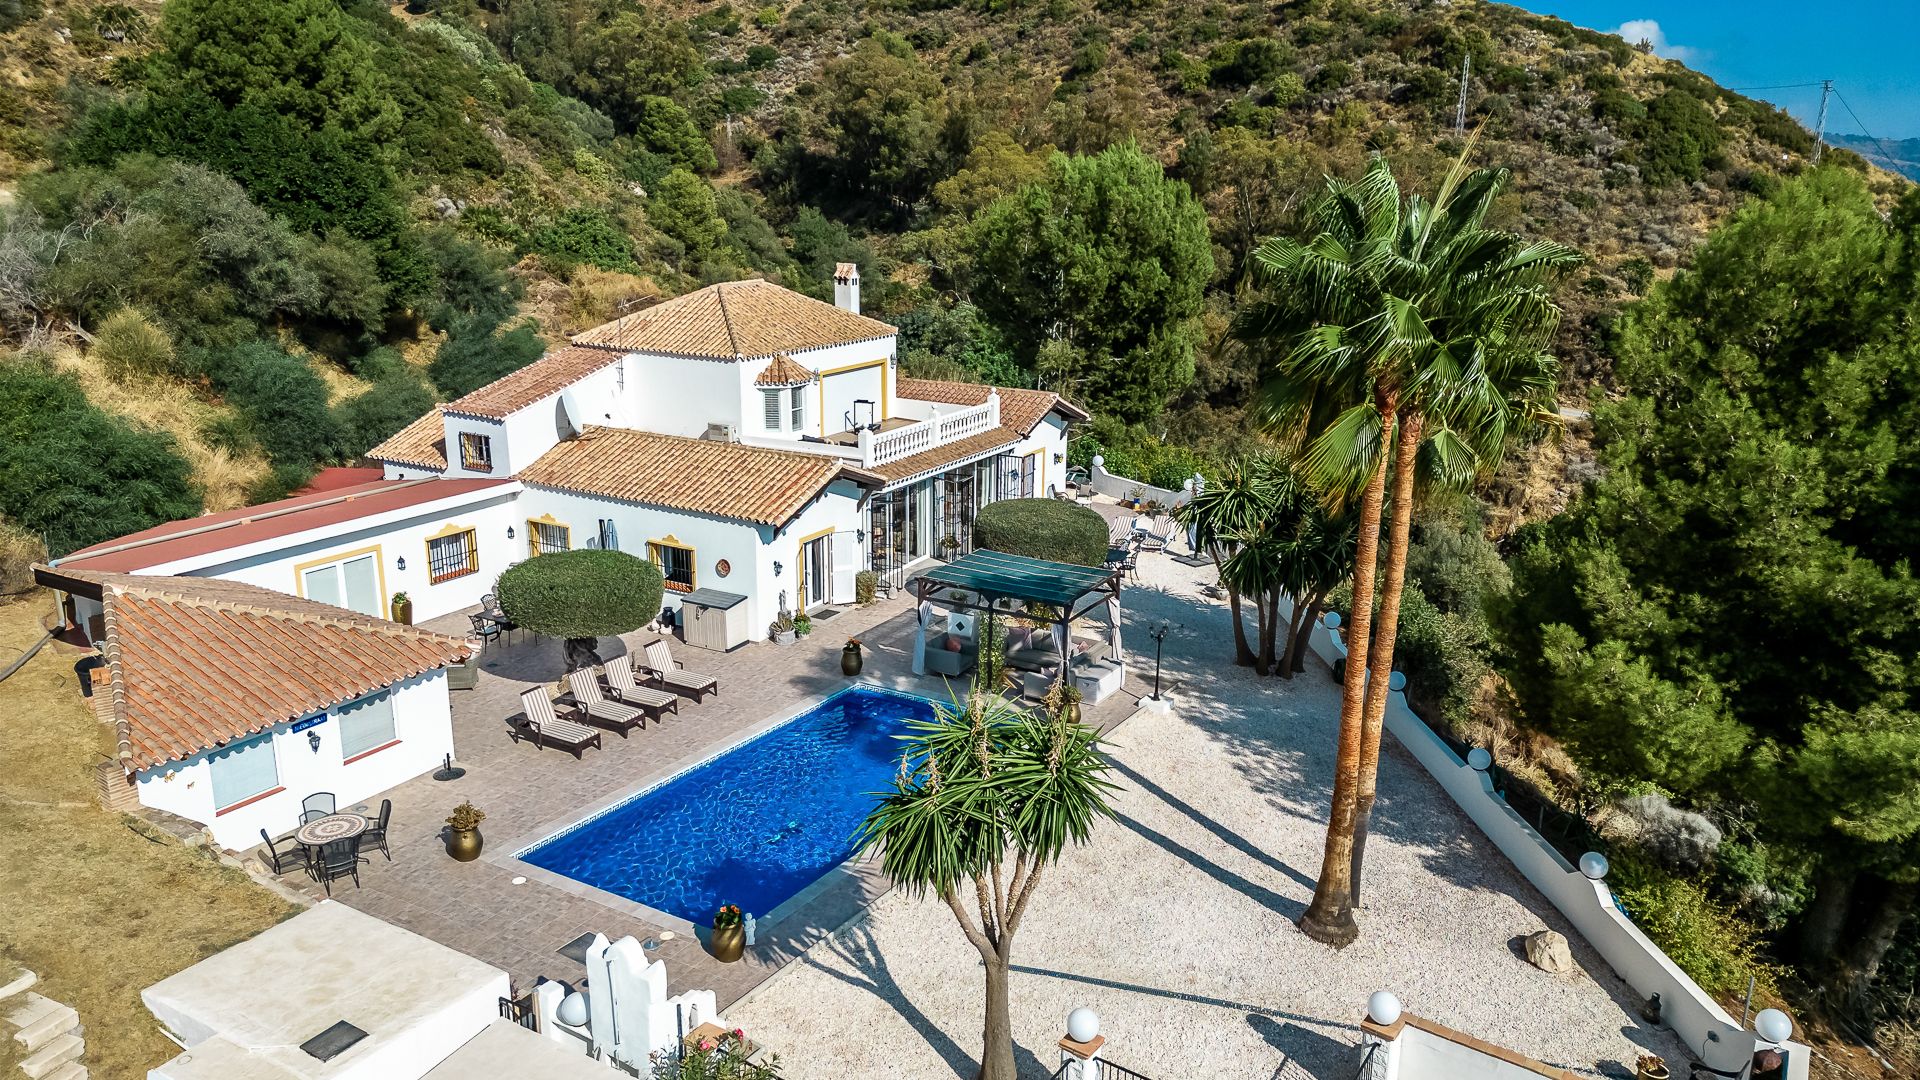 Villa with Stunning Views 5 Minutes from Marbella | Engel & Völkers Marbella